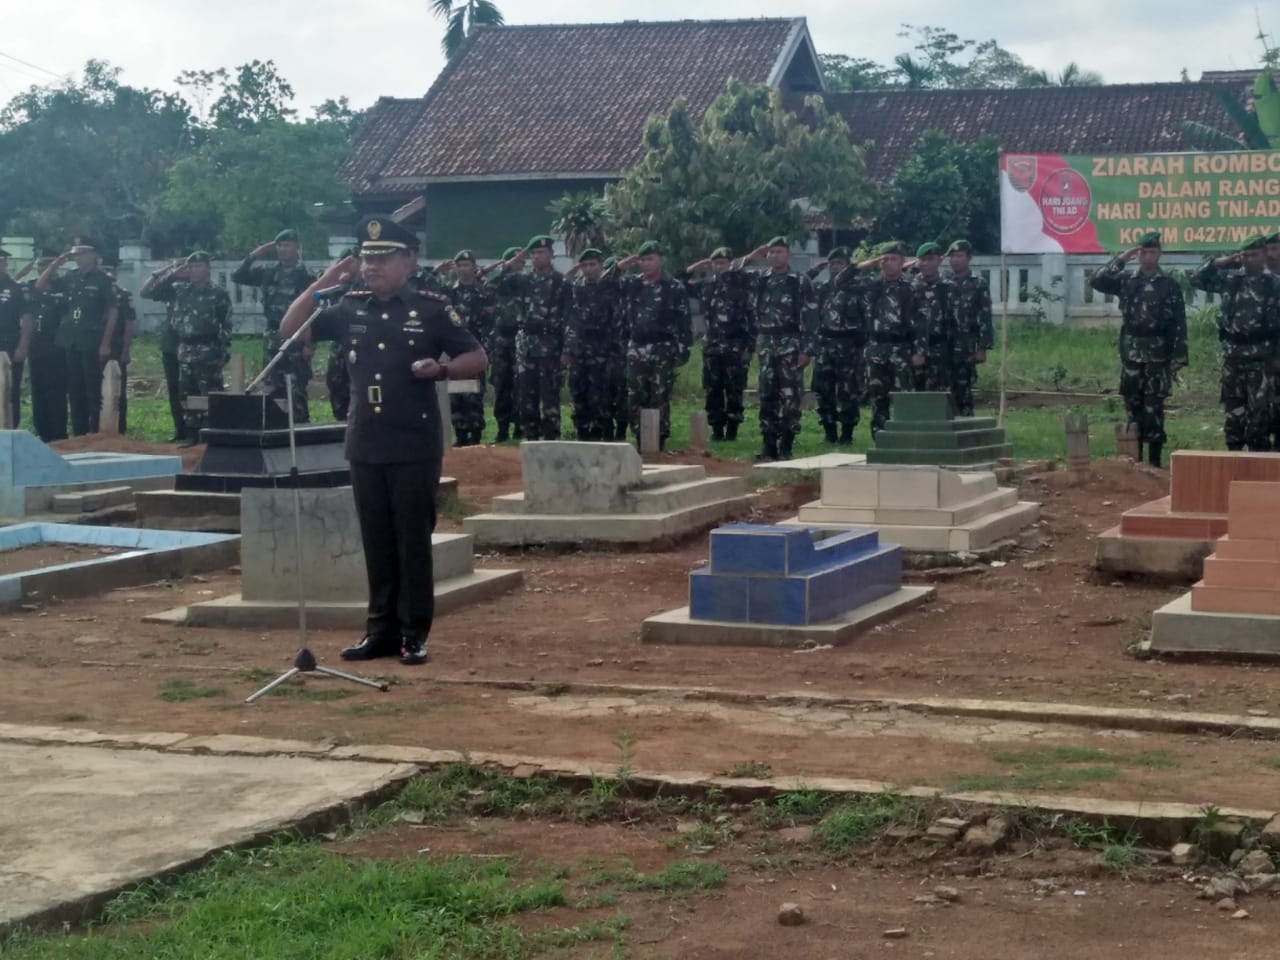 Peringati Hari Juang TNI AD, Kodim 0427/Waykanan Ziarah Makam